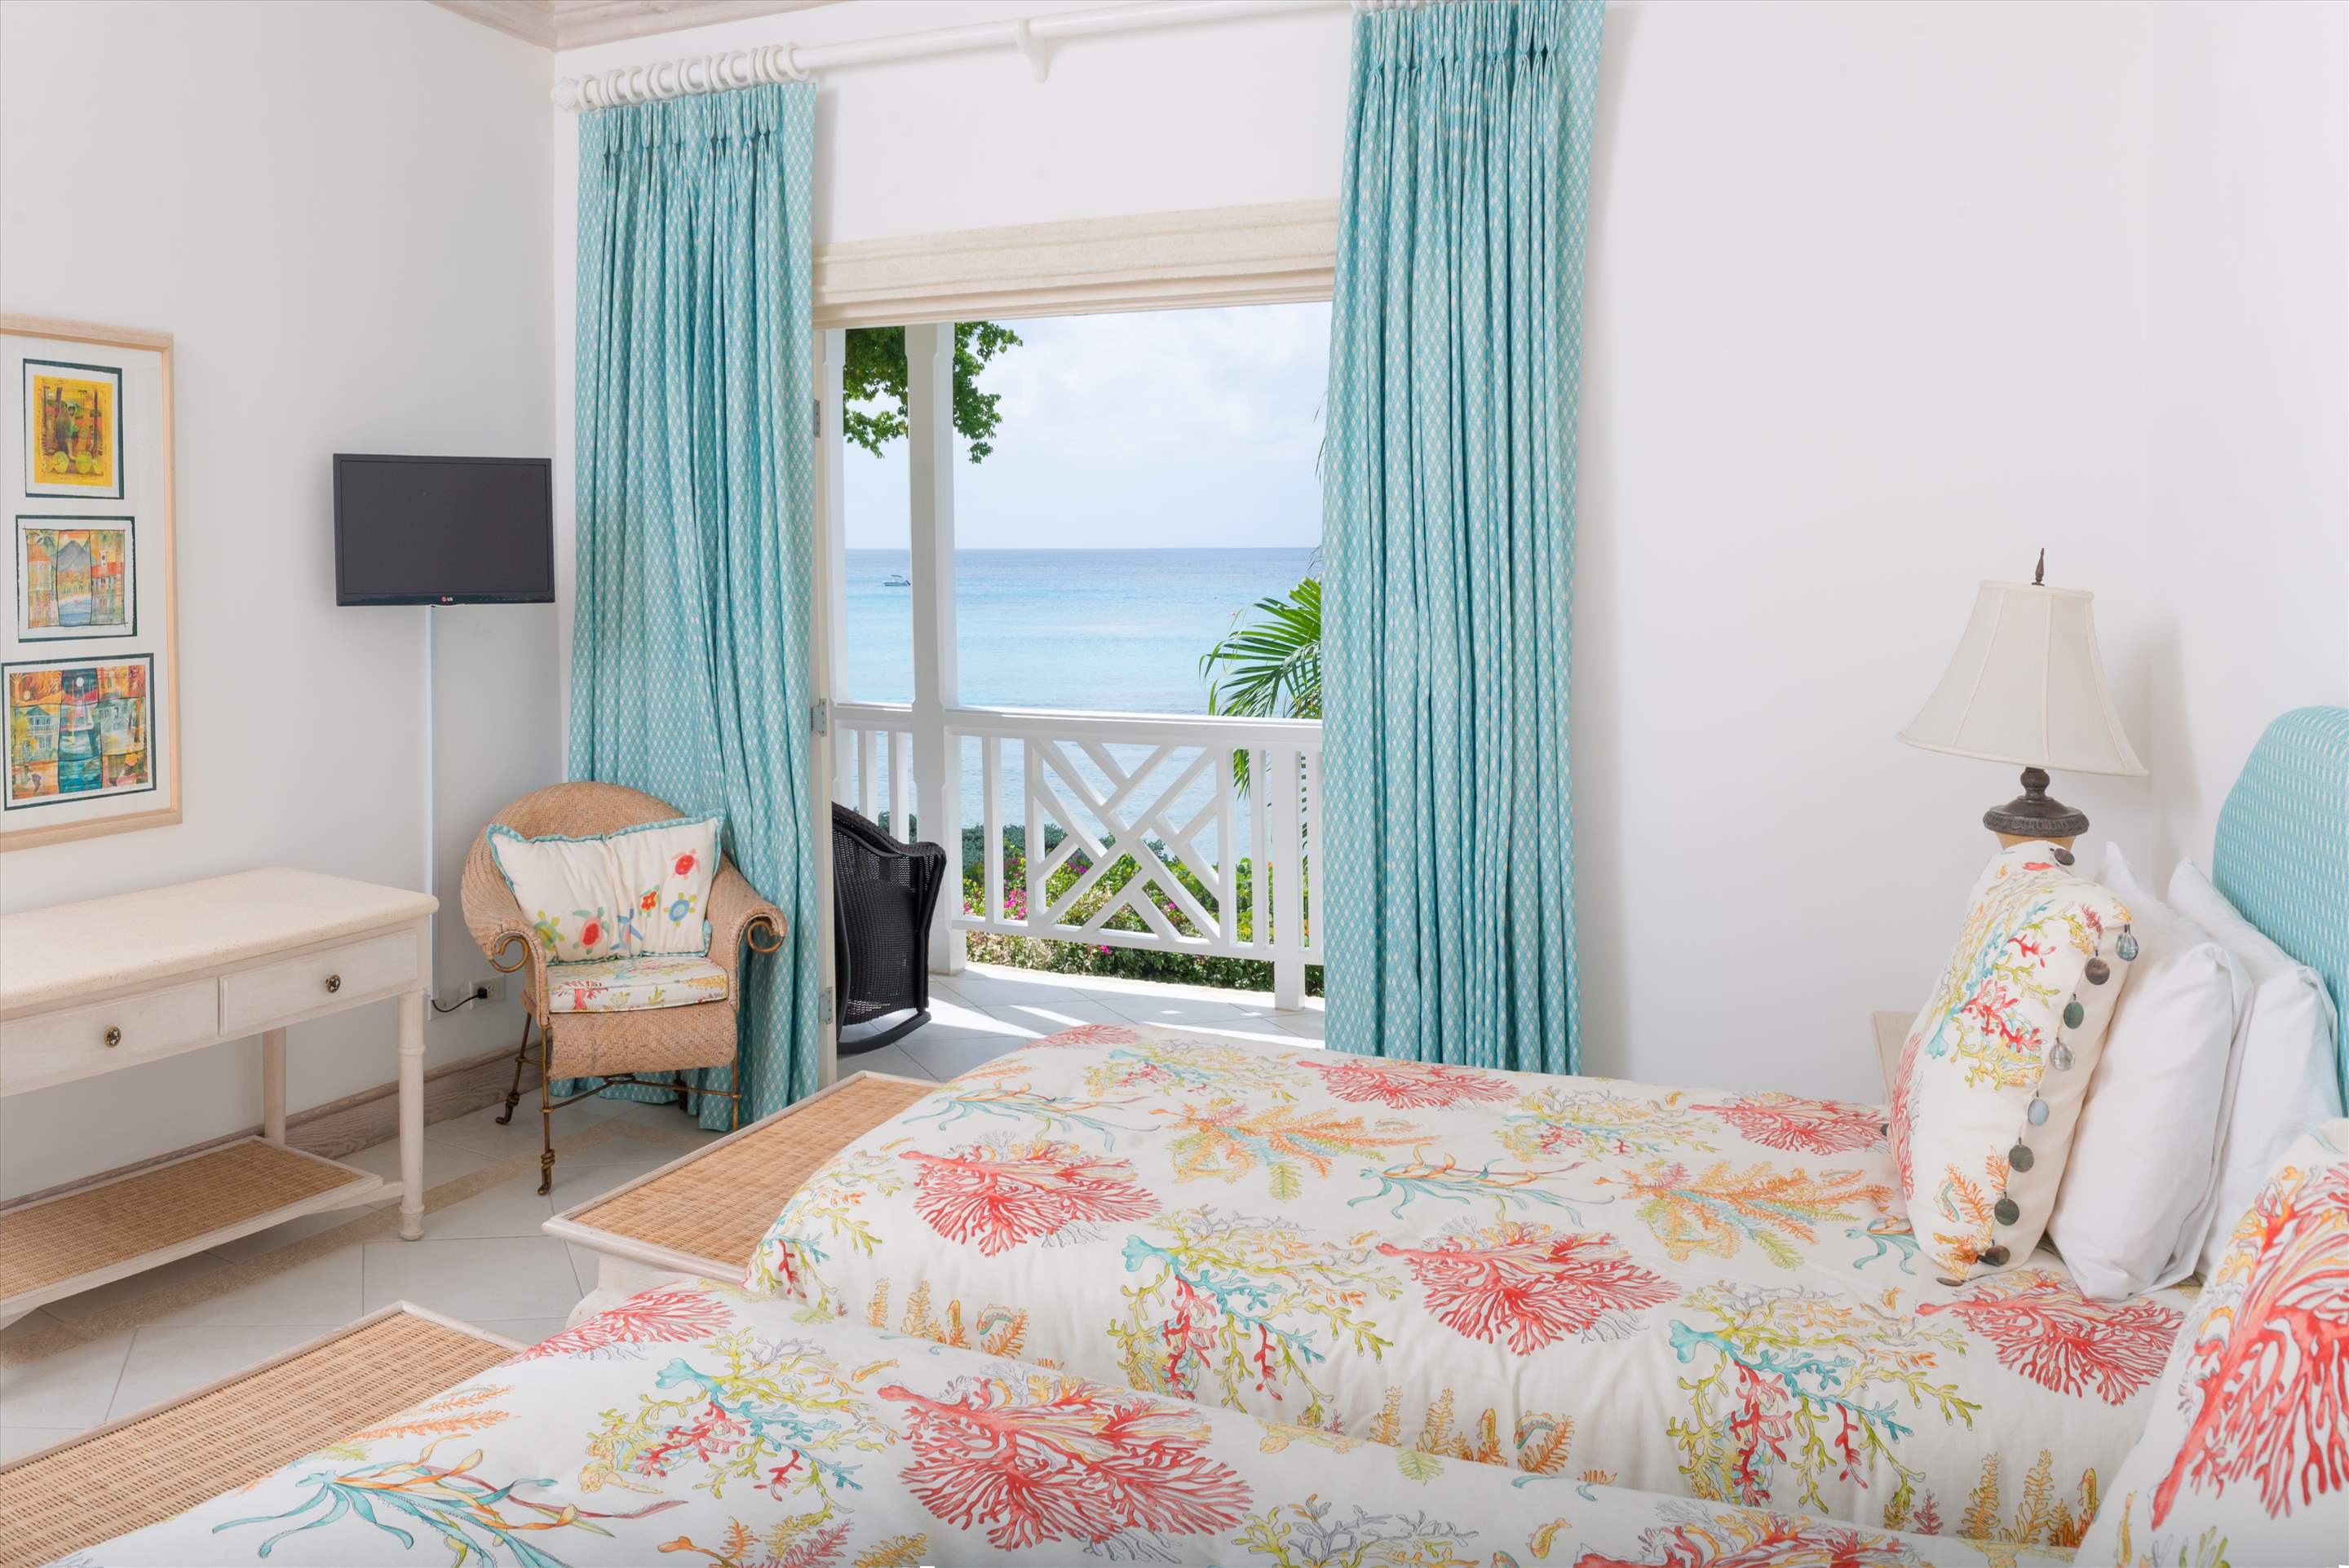 Chanel no.5, 3 bedroom villa in St. James & West Coast, Barbados Photo #17